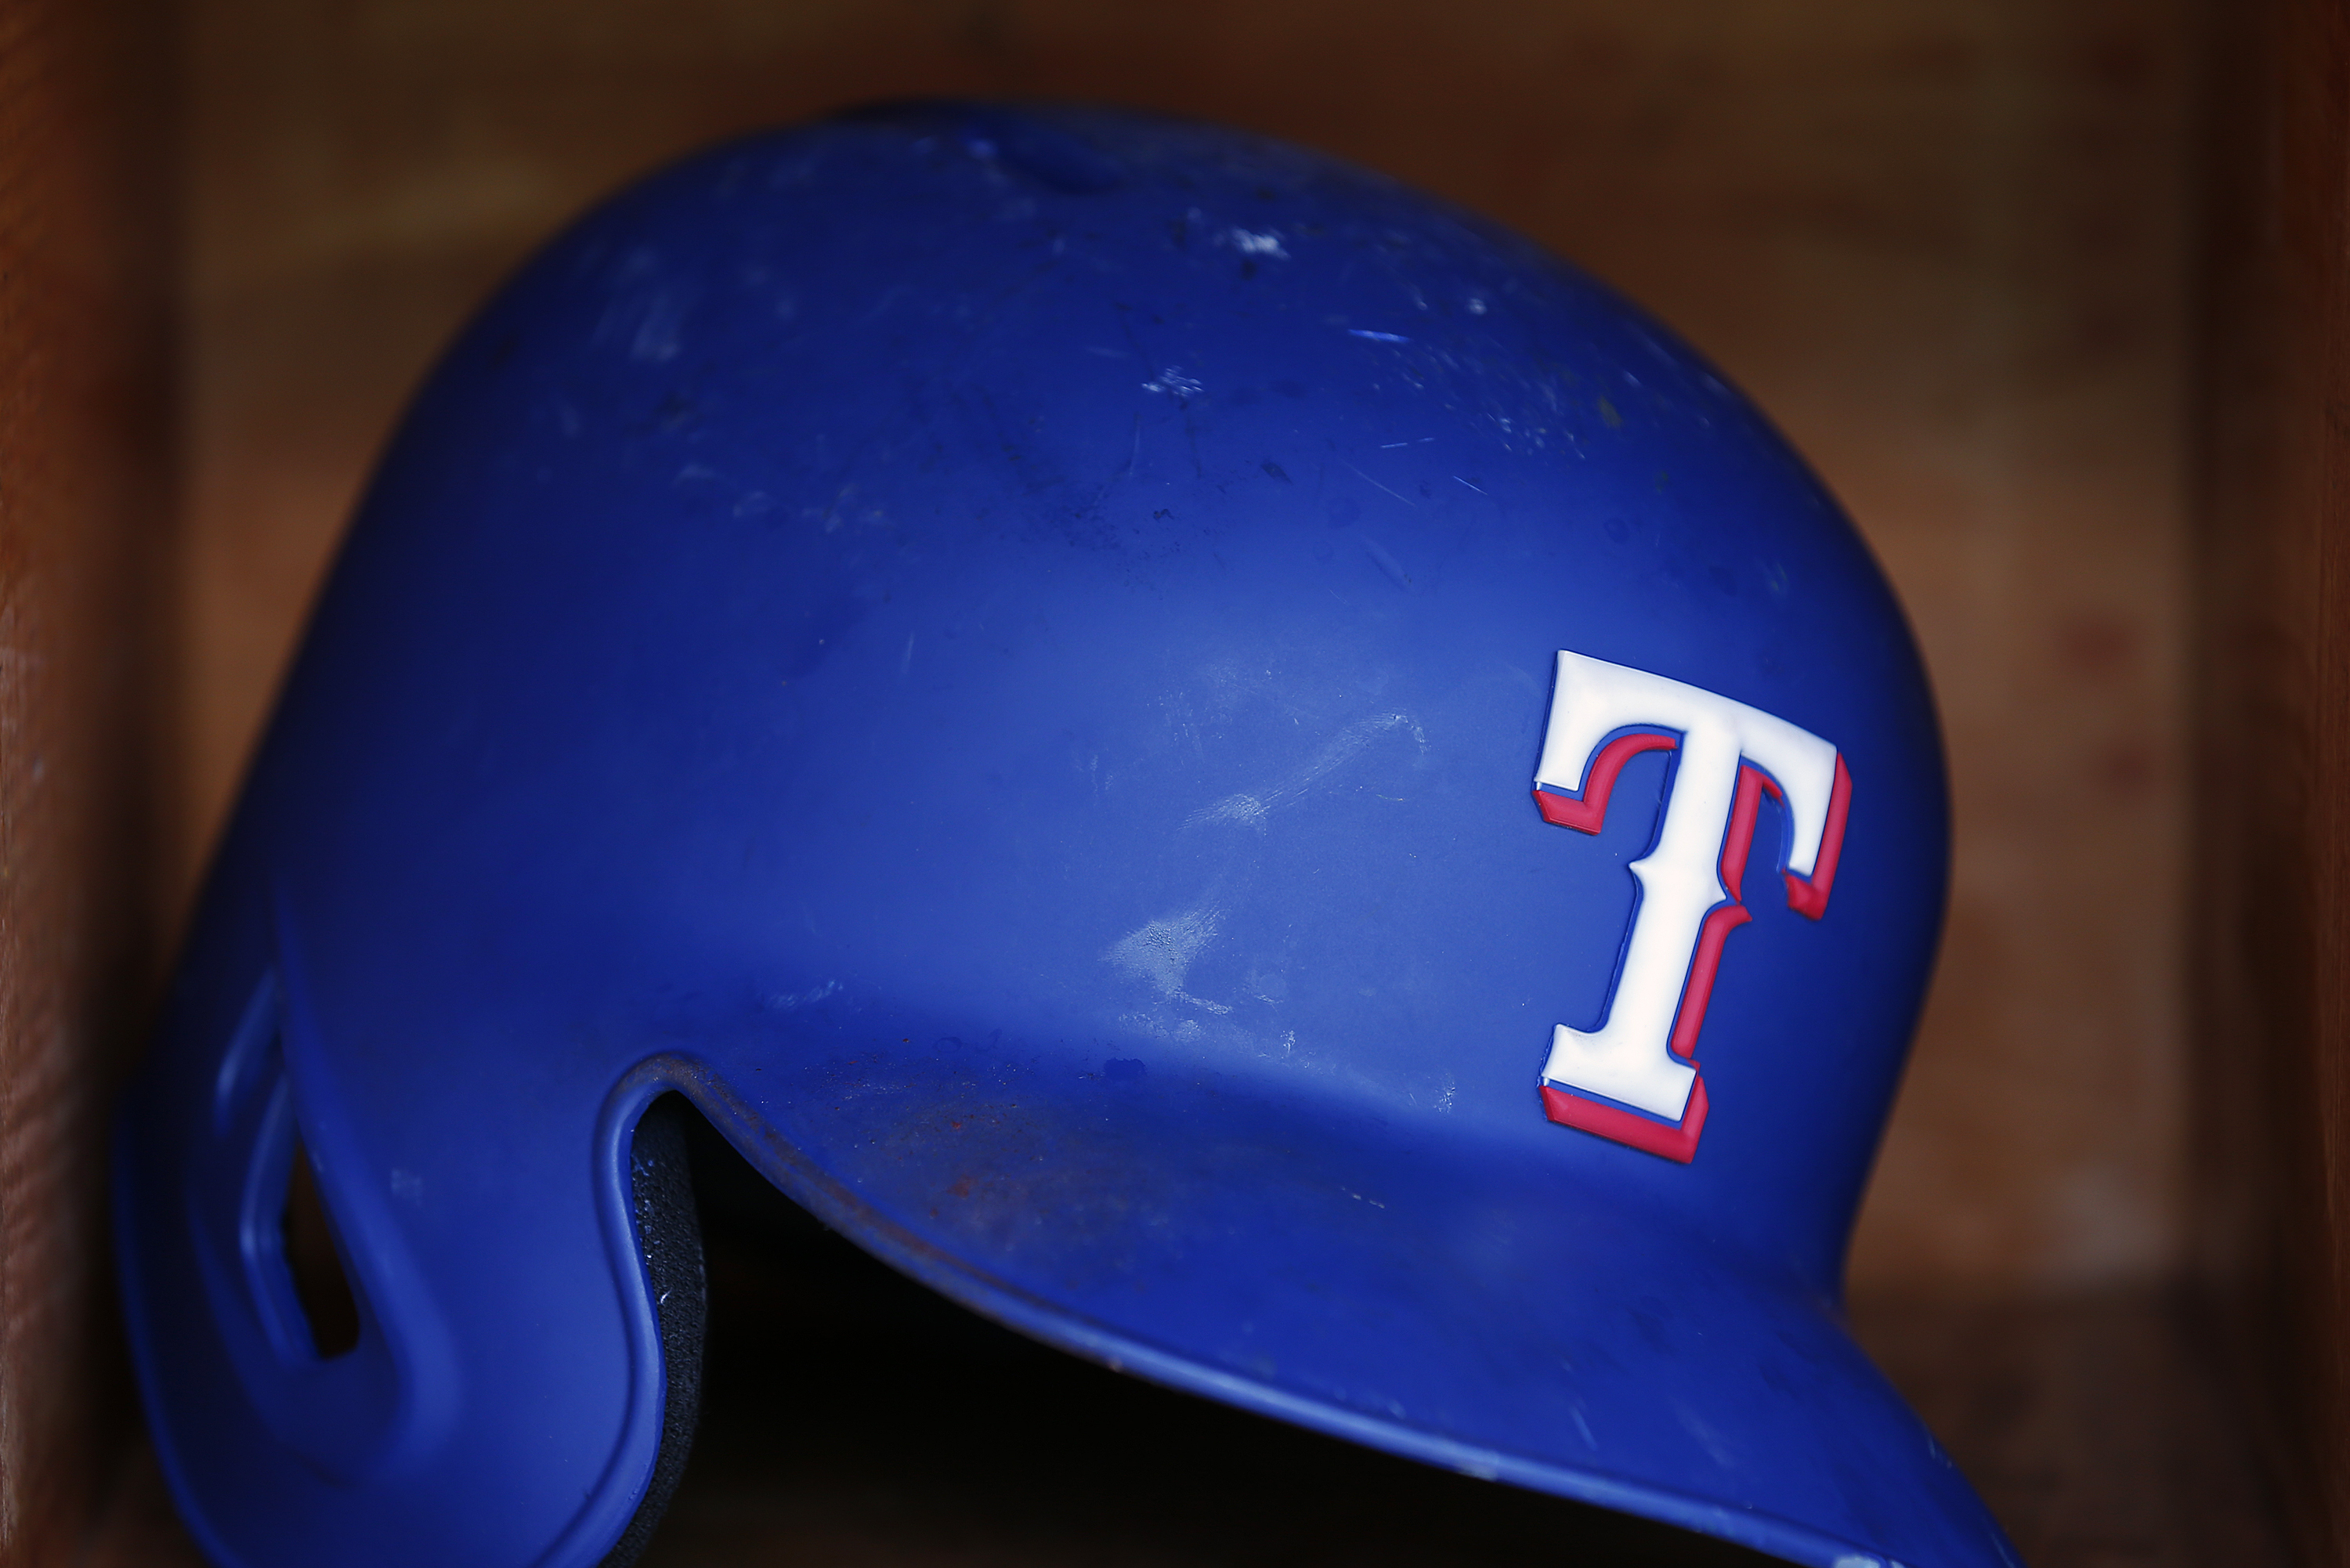 Texas Rangers Colors, Sports Teams Colors